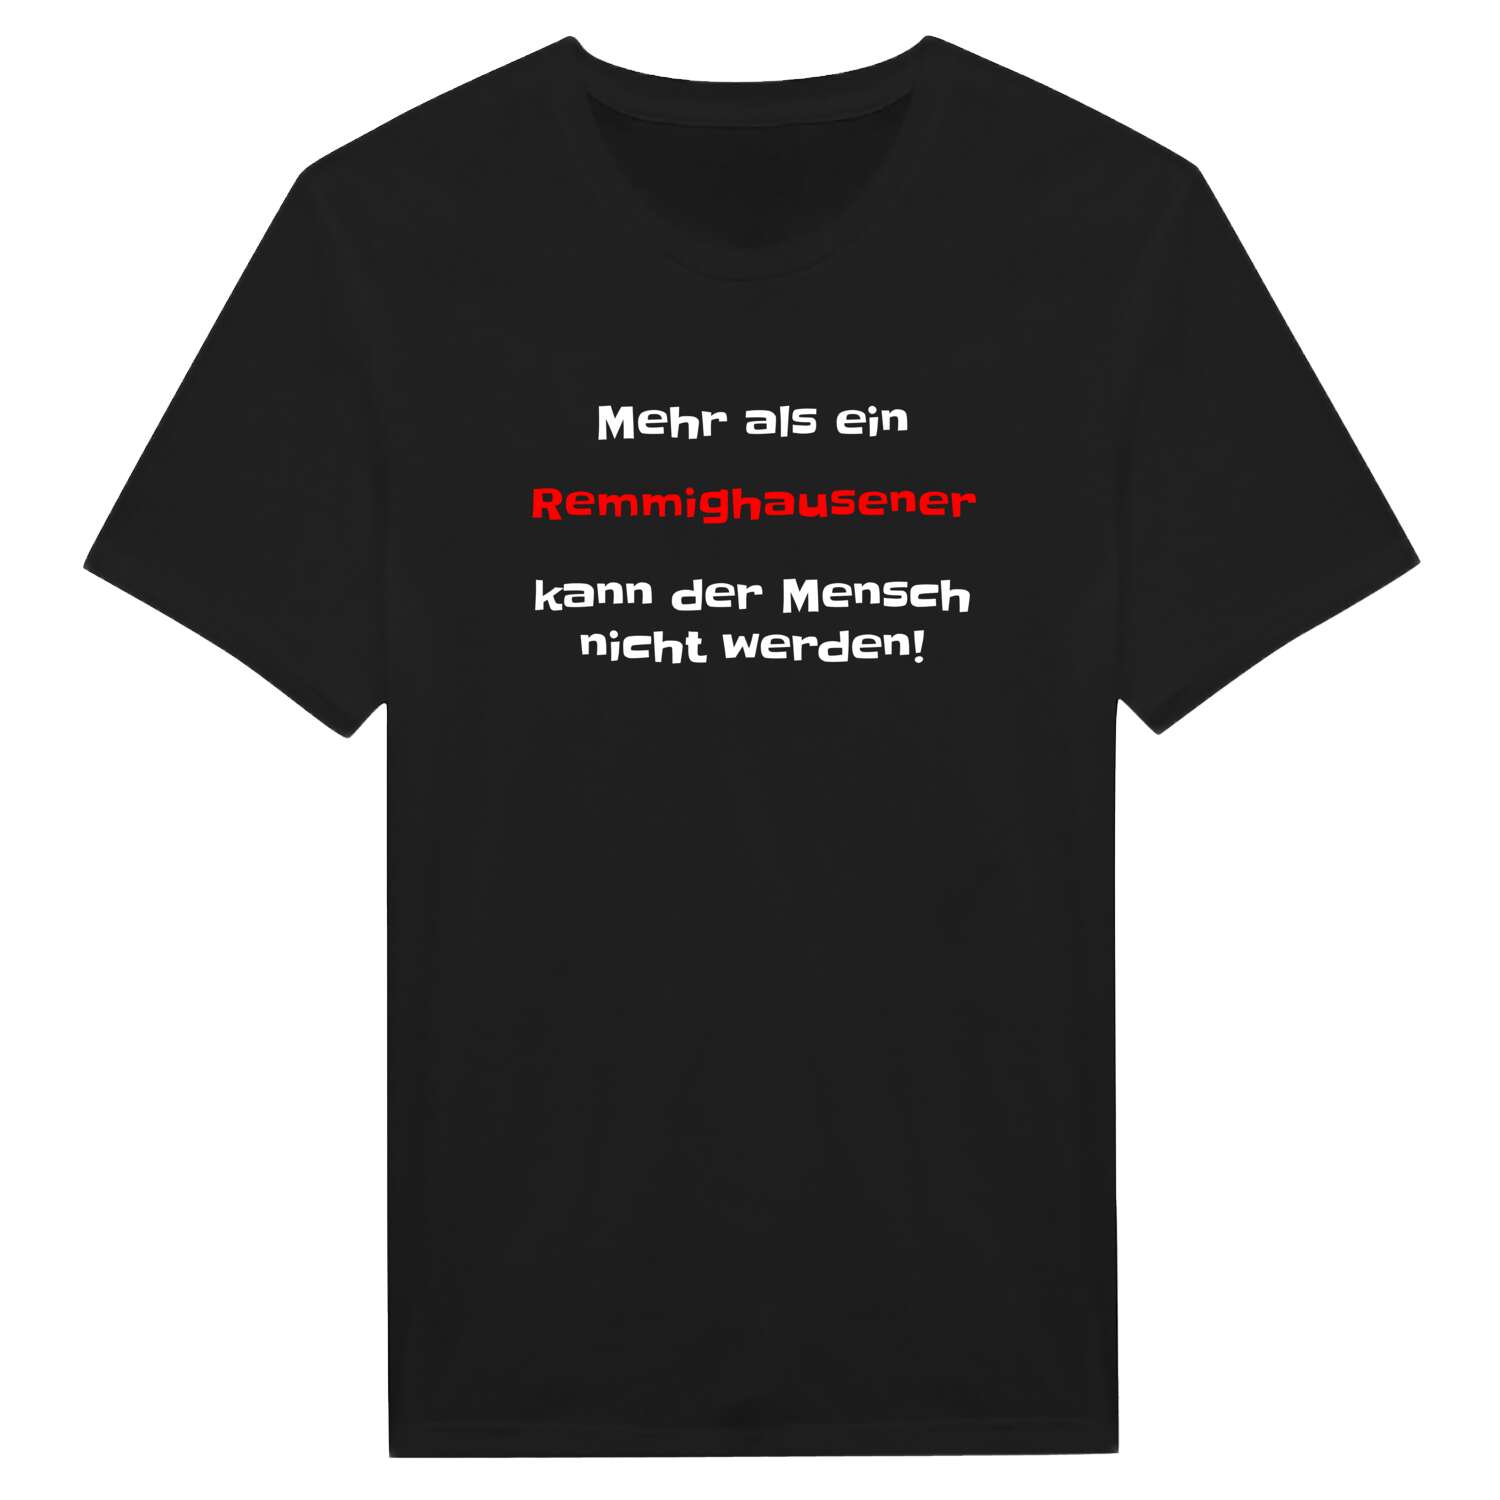 Remmighausen T-Shirt »Mehr als ein«